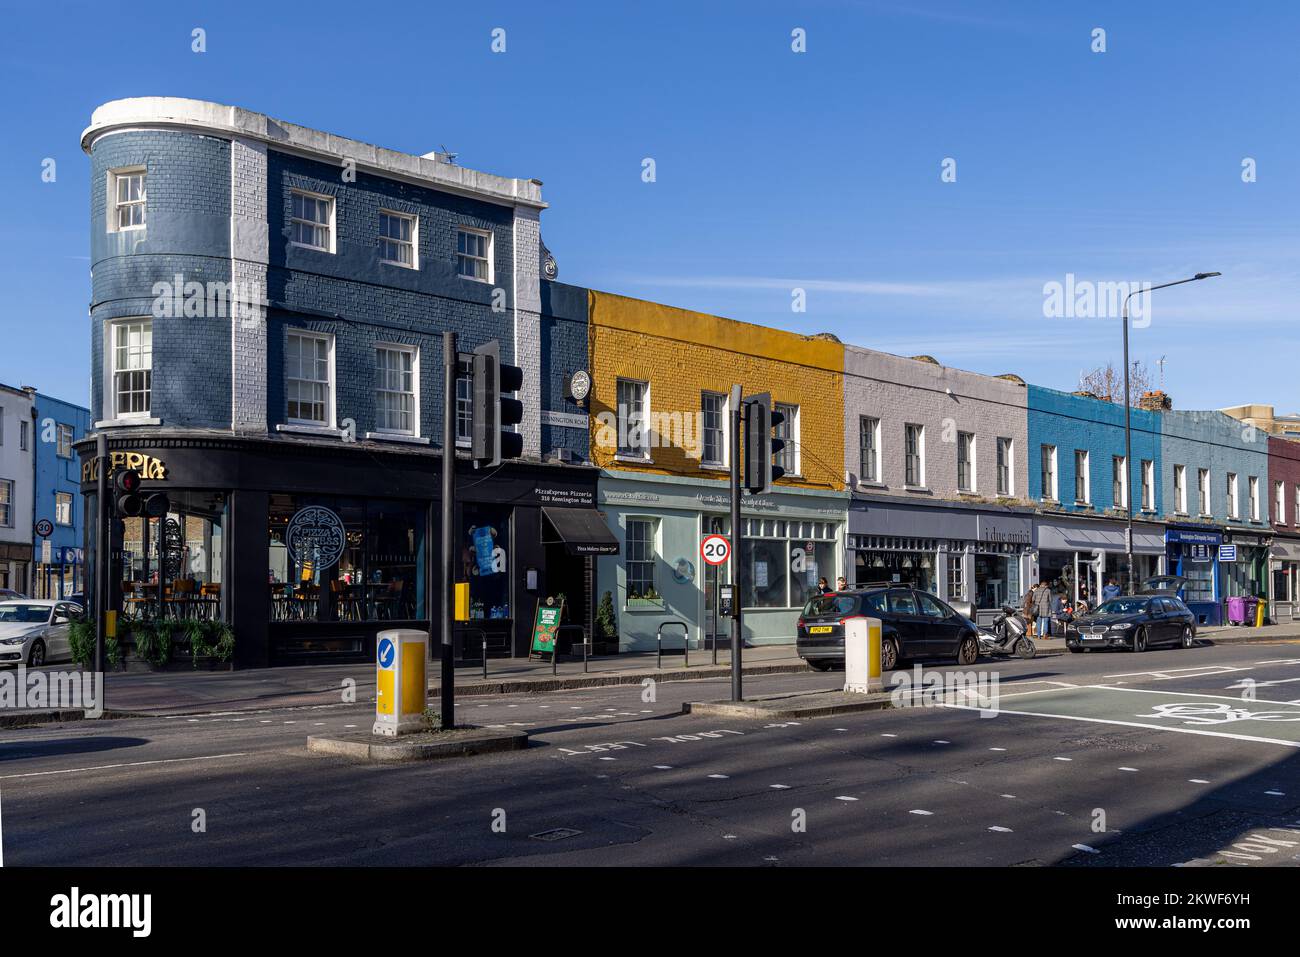 Street scene, Kennington Road, London, England Stock Photo